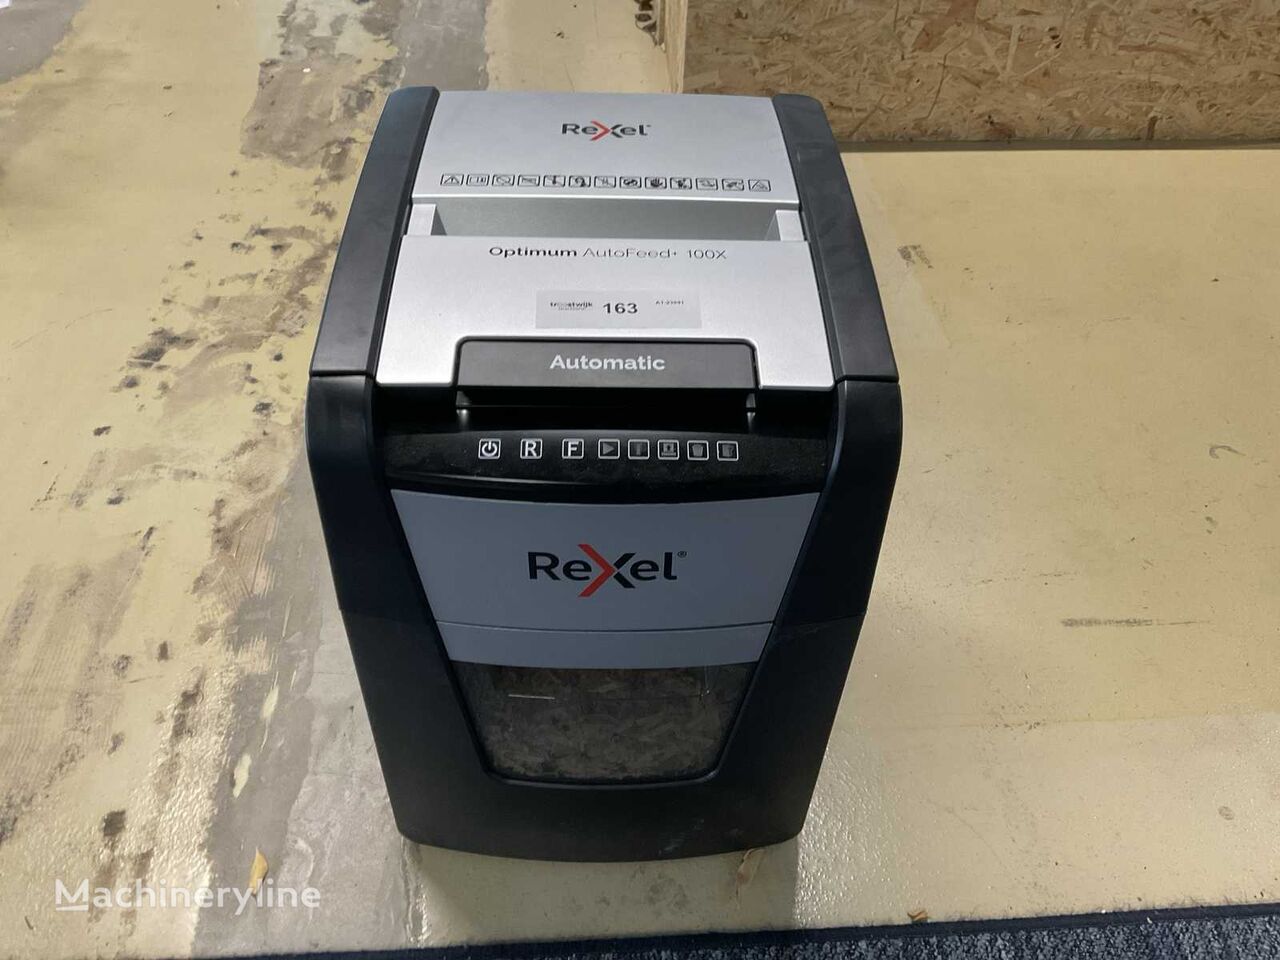 Rexel Optimum AutoFeed+ 100X diğer baskı makinesi